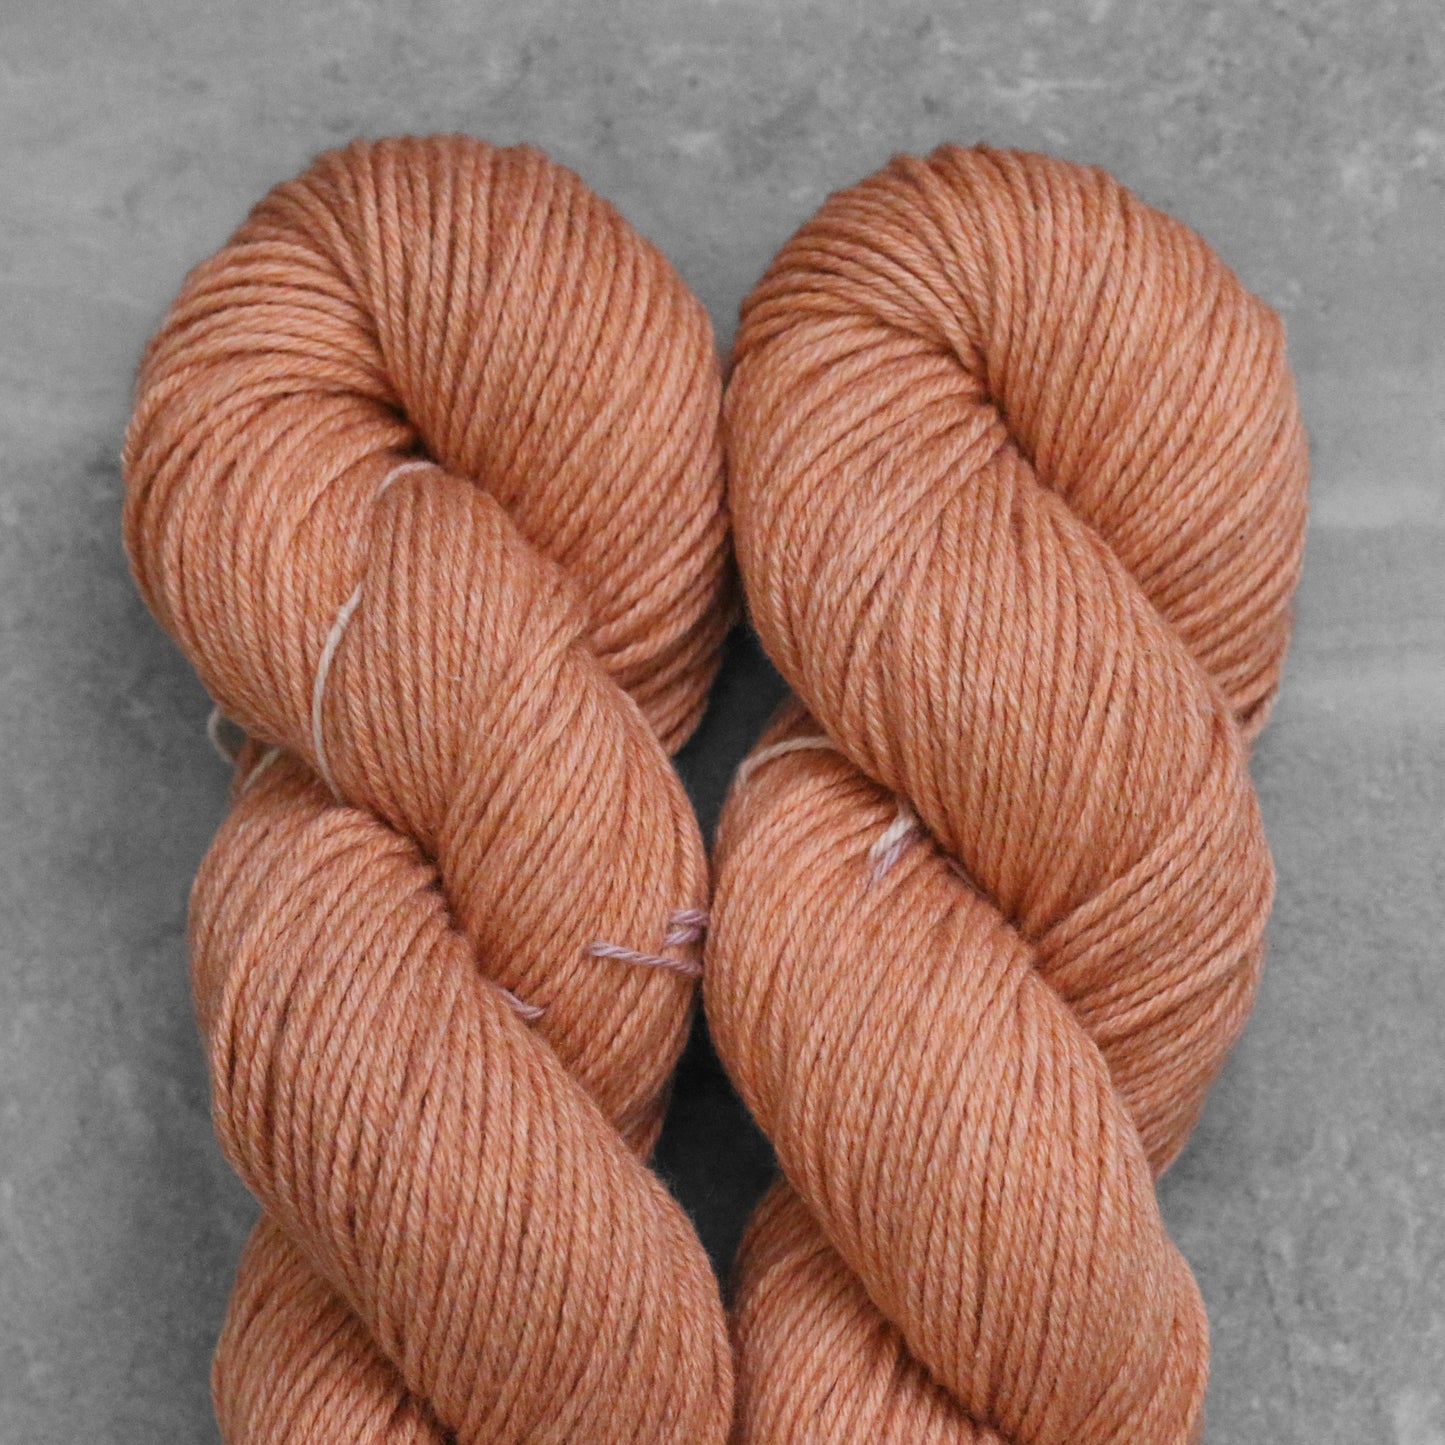 Tosh Wool + Cotton | High Plains Drifter